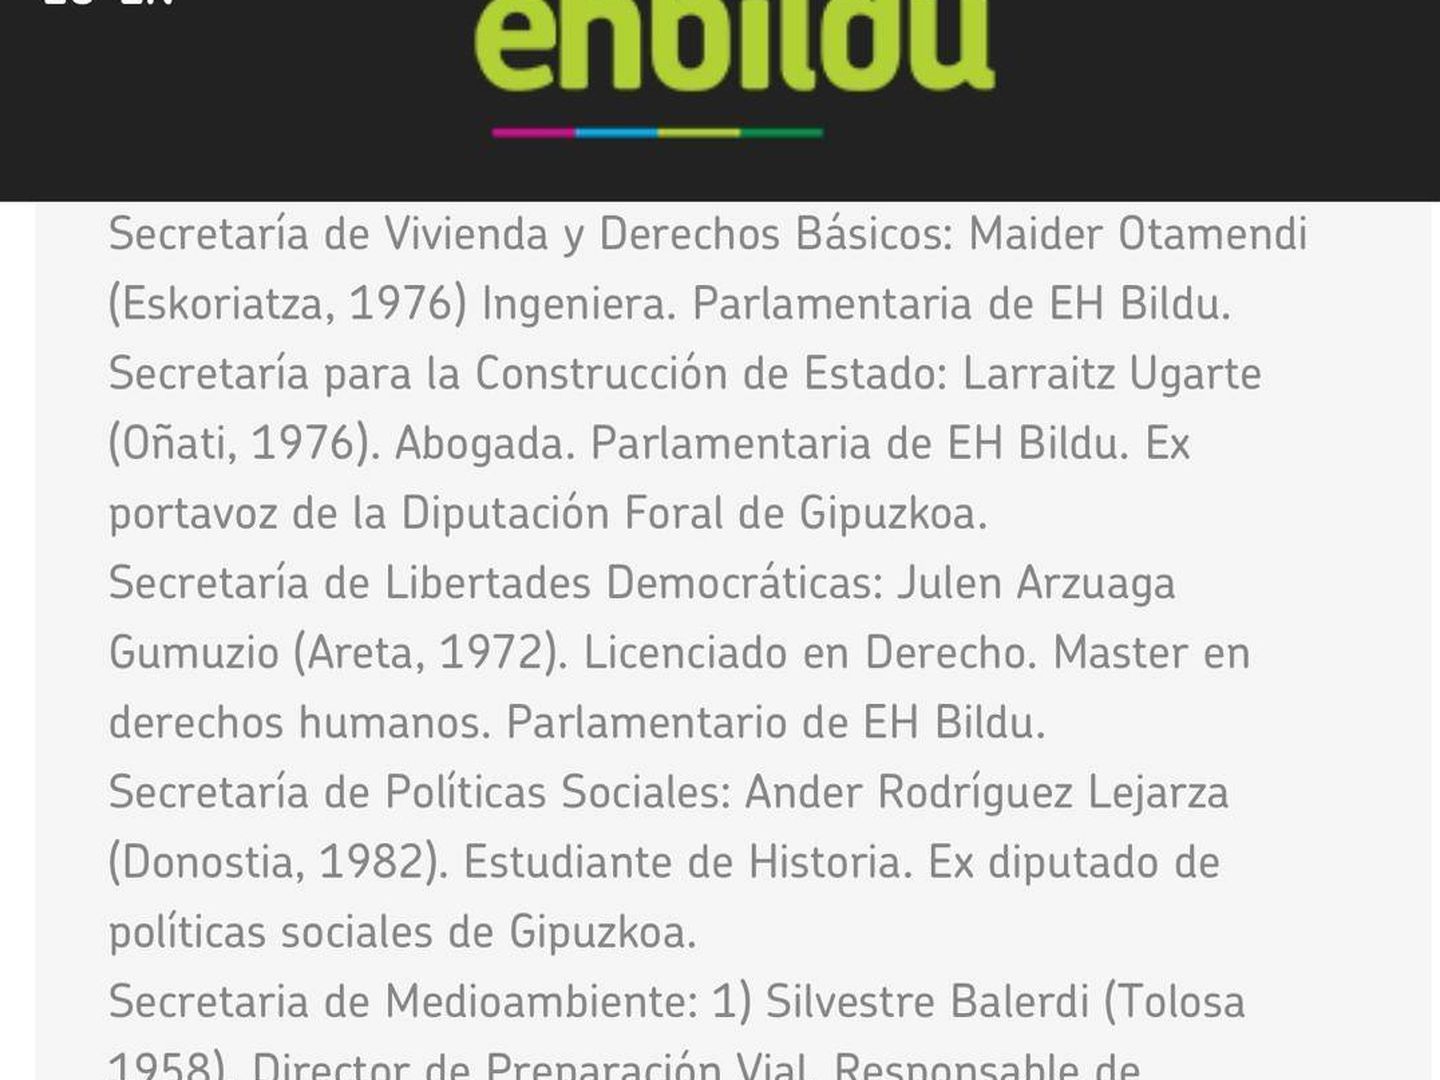 Página web de Bildu con el currículo de Julen Arzuaga que incluye un máster en Derechos Humanos.